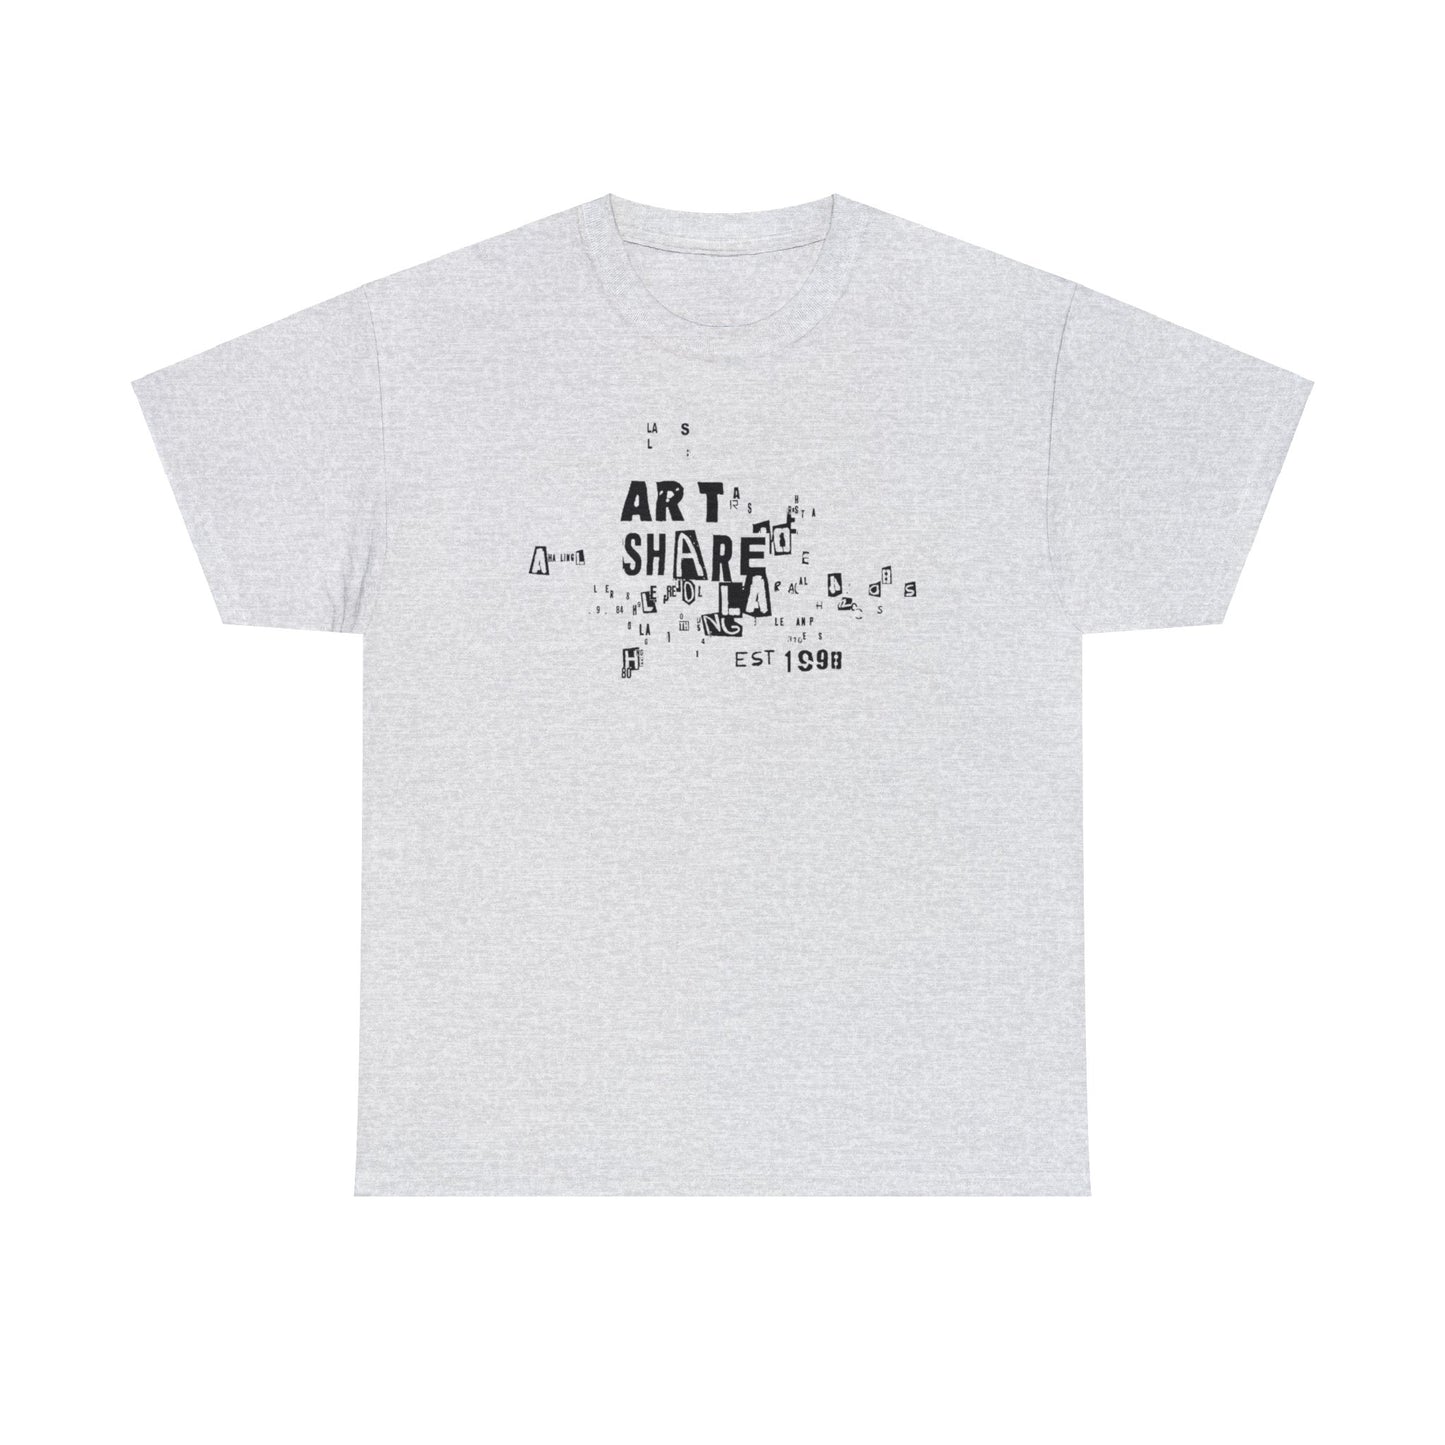 ART SHARE L.A. EST. 1998 T-Shirt